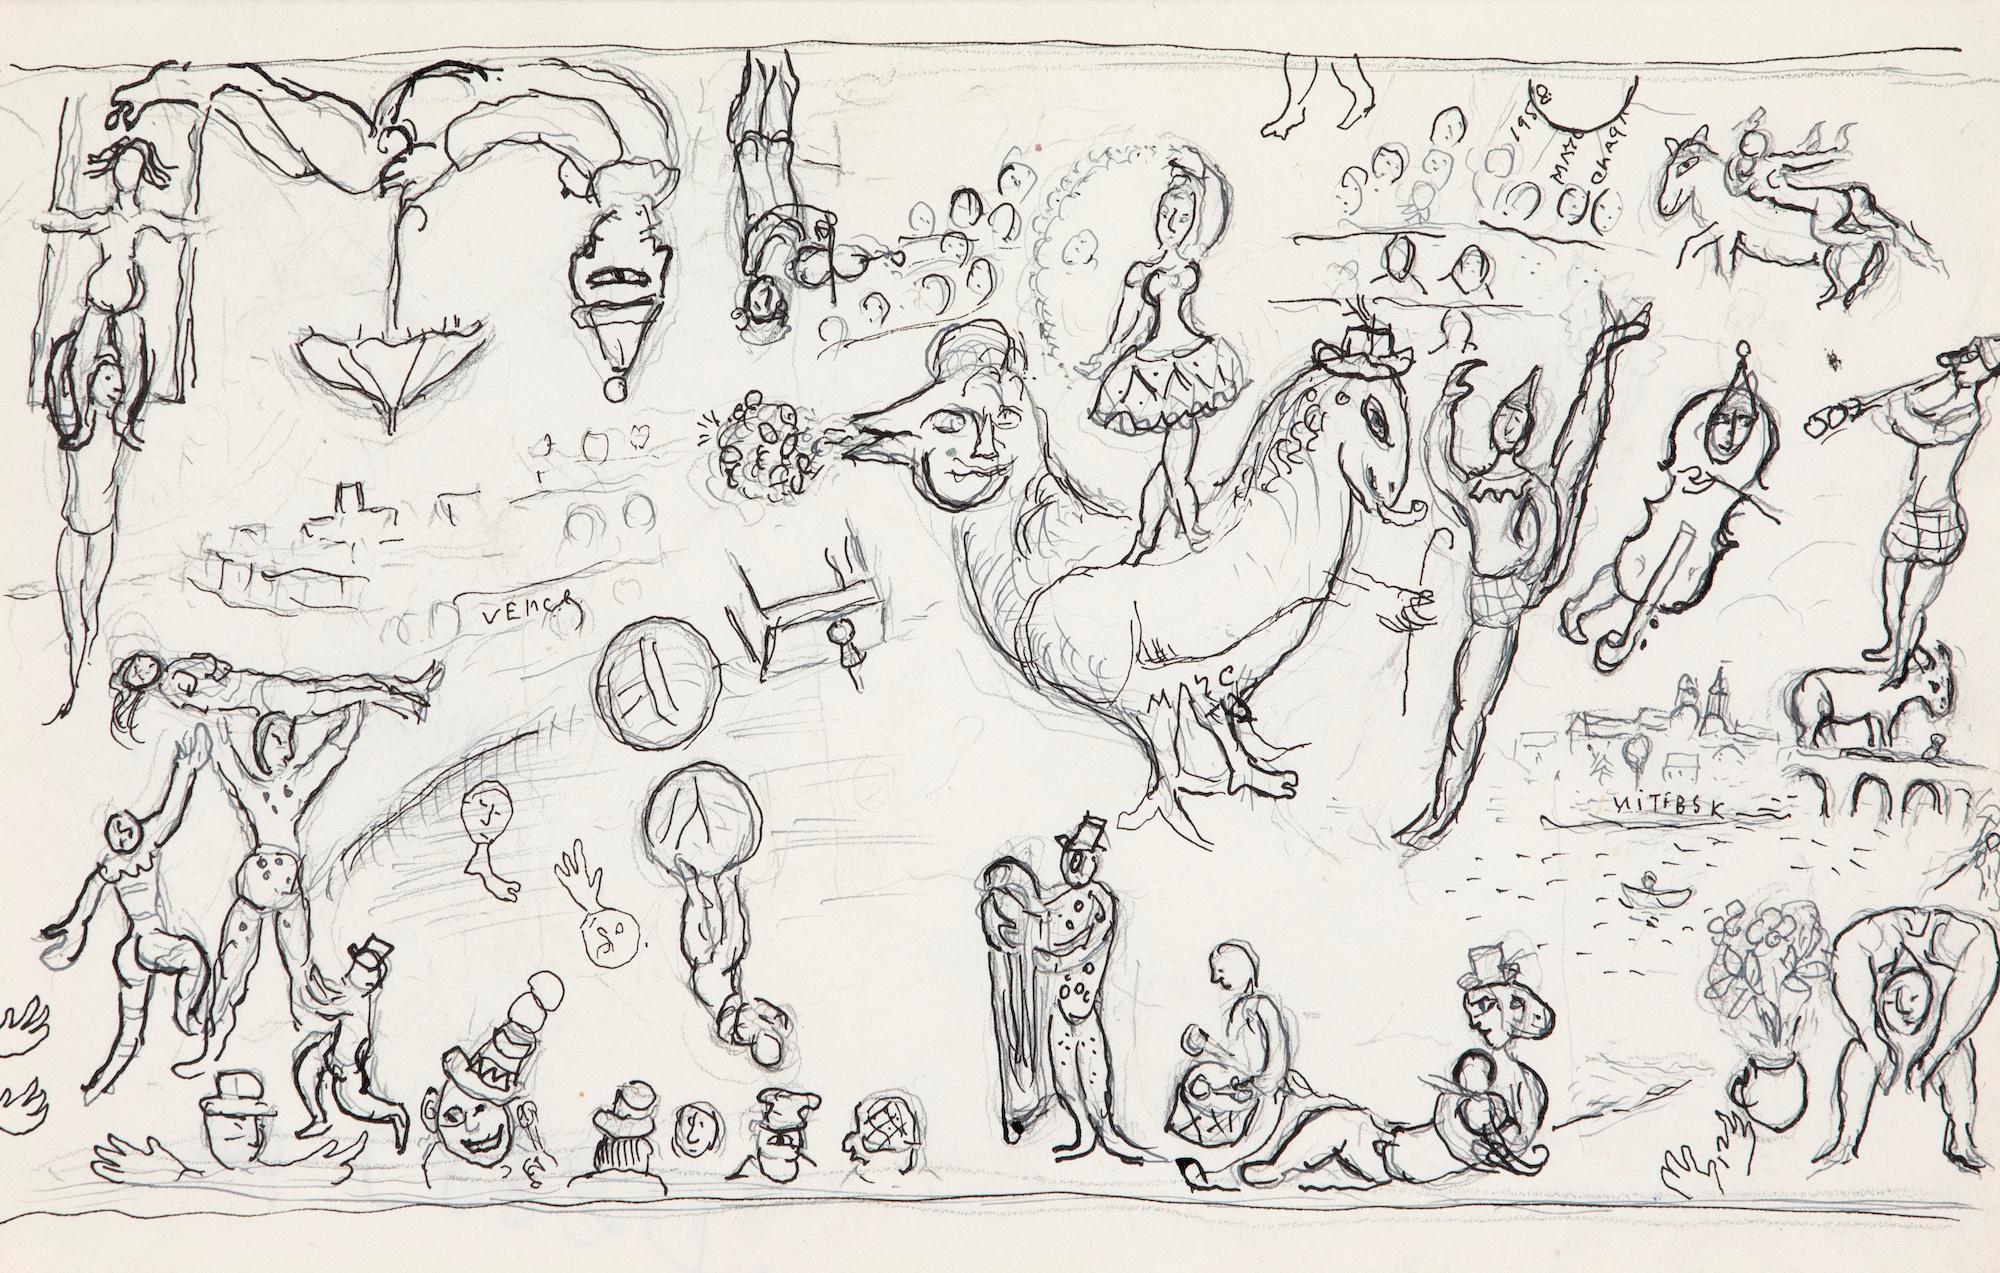 *DIESER PREIS BEINHALTET 5 % EINFUHRZOLL, DER NUR DANN ANFÄLLT, WENN DAS WERK IM VEREINIGTEN KÖNIGREICH BLEIBT. 

Esquisse pour "Commedia dell'arte" von Marc Chagall (1887-1985)
Tusche, Feder und Bleistift auf Papier
26,2 x 36,2 cm (10 ¹/₄ x 14 ¹/₄